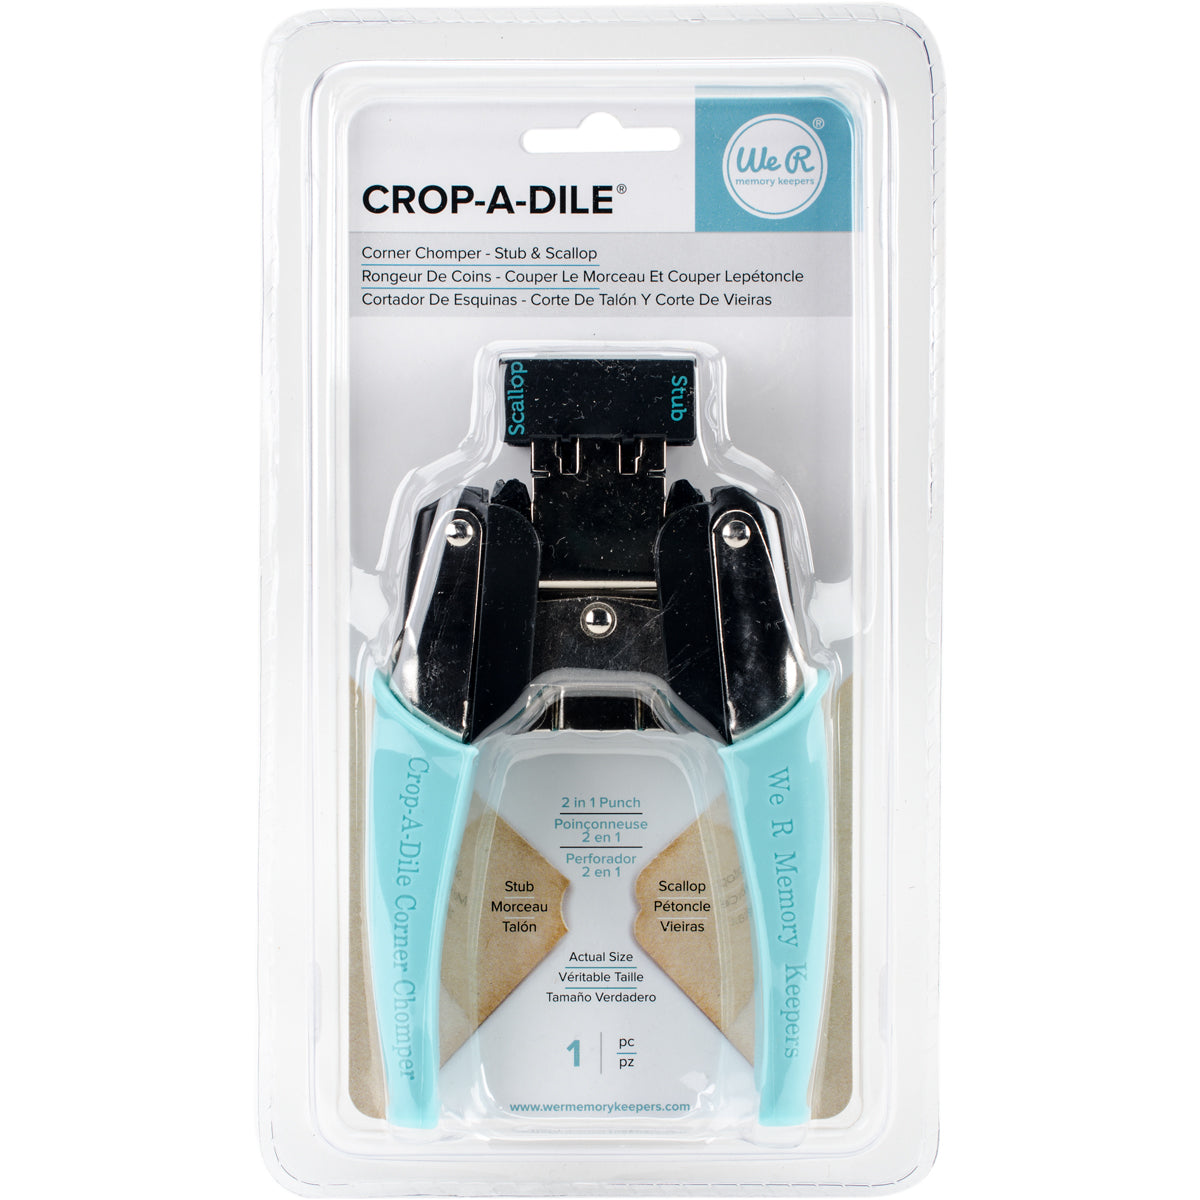 Crop-A-Dile Corner Chomper Tool-Stub & Scallop